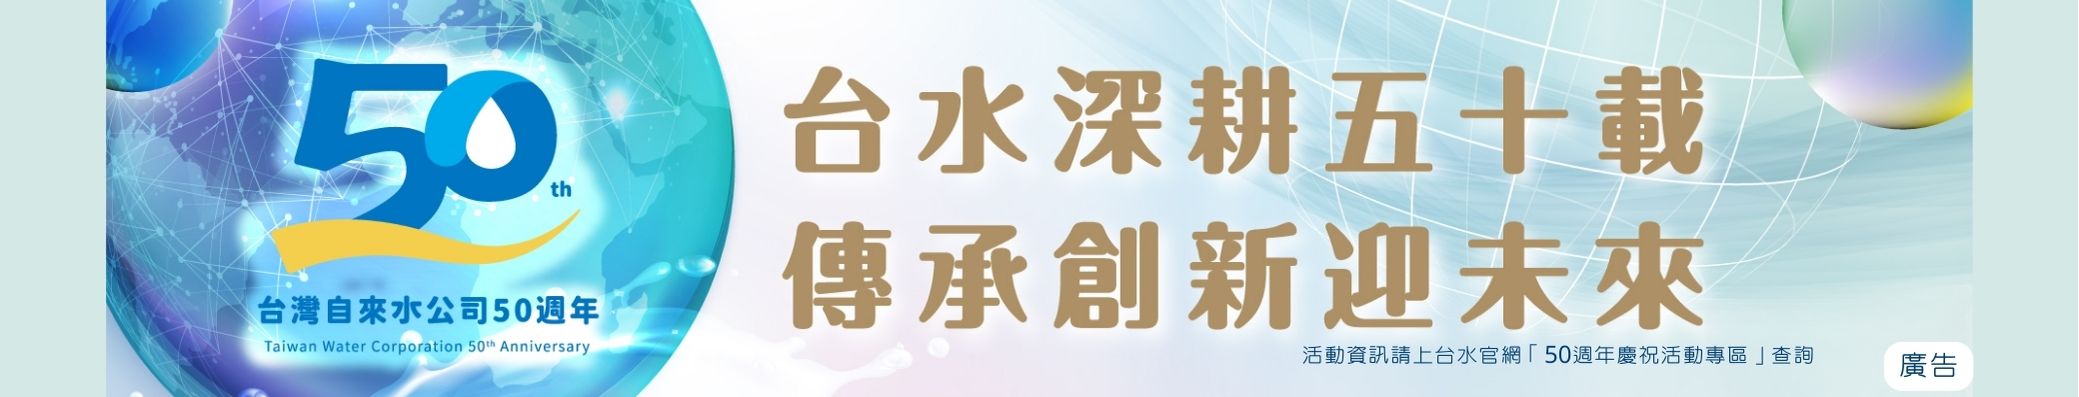 區處網站banner(台水五十).jpg